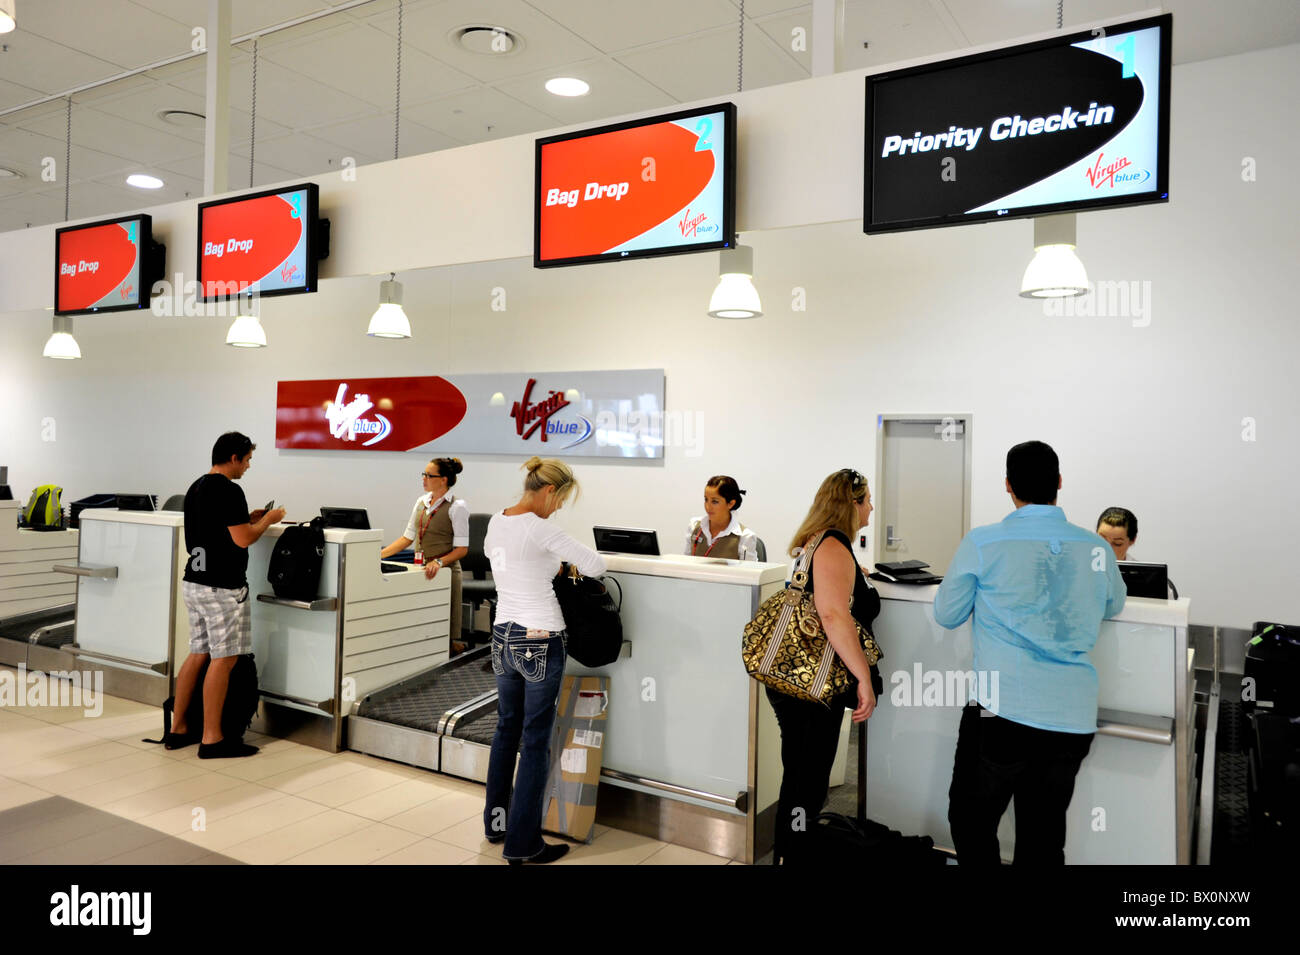 Enregistrement prioritaire la Vierge comptoir à l'Aéroport de Gold Coast en Australie Banque D'Images